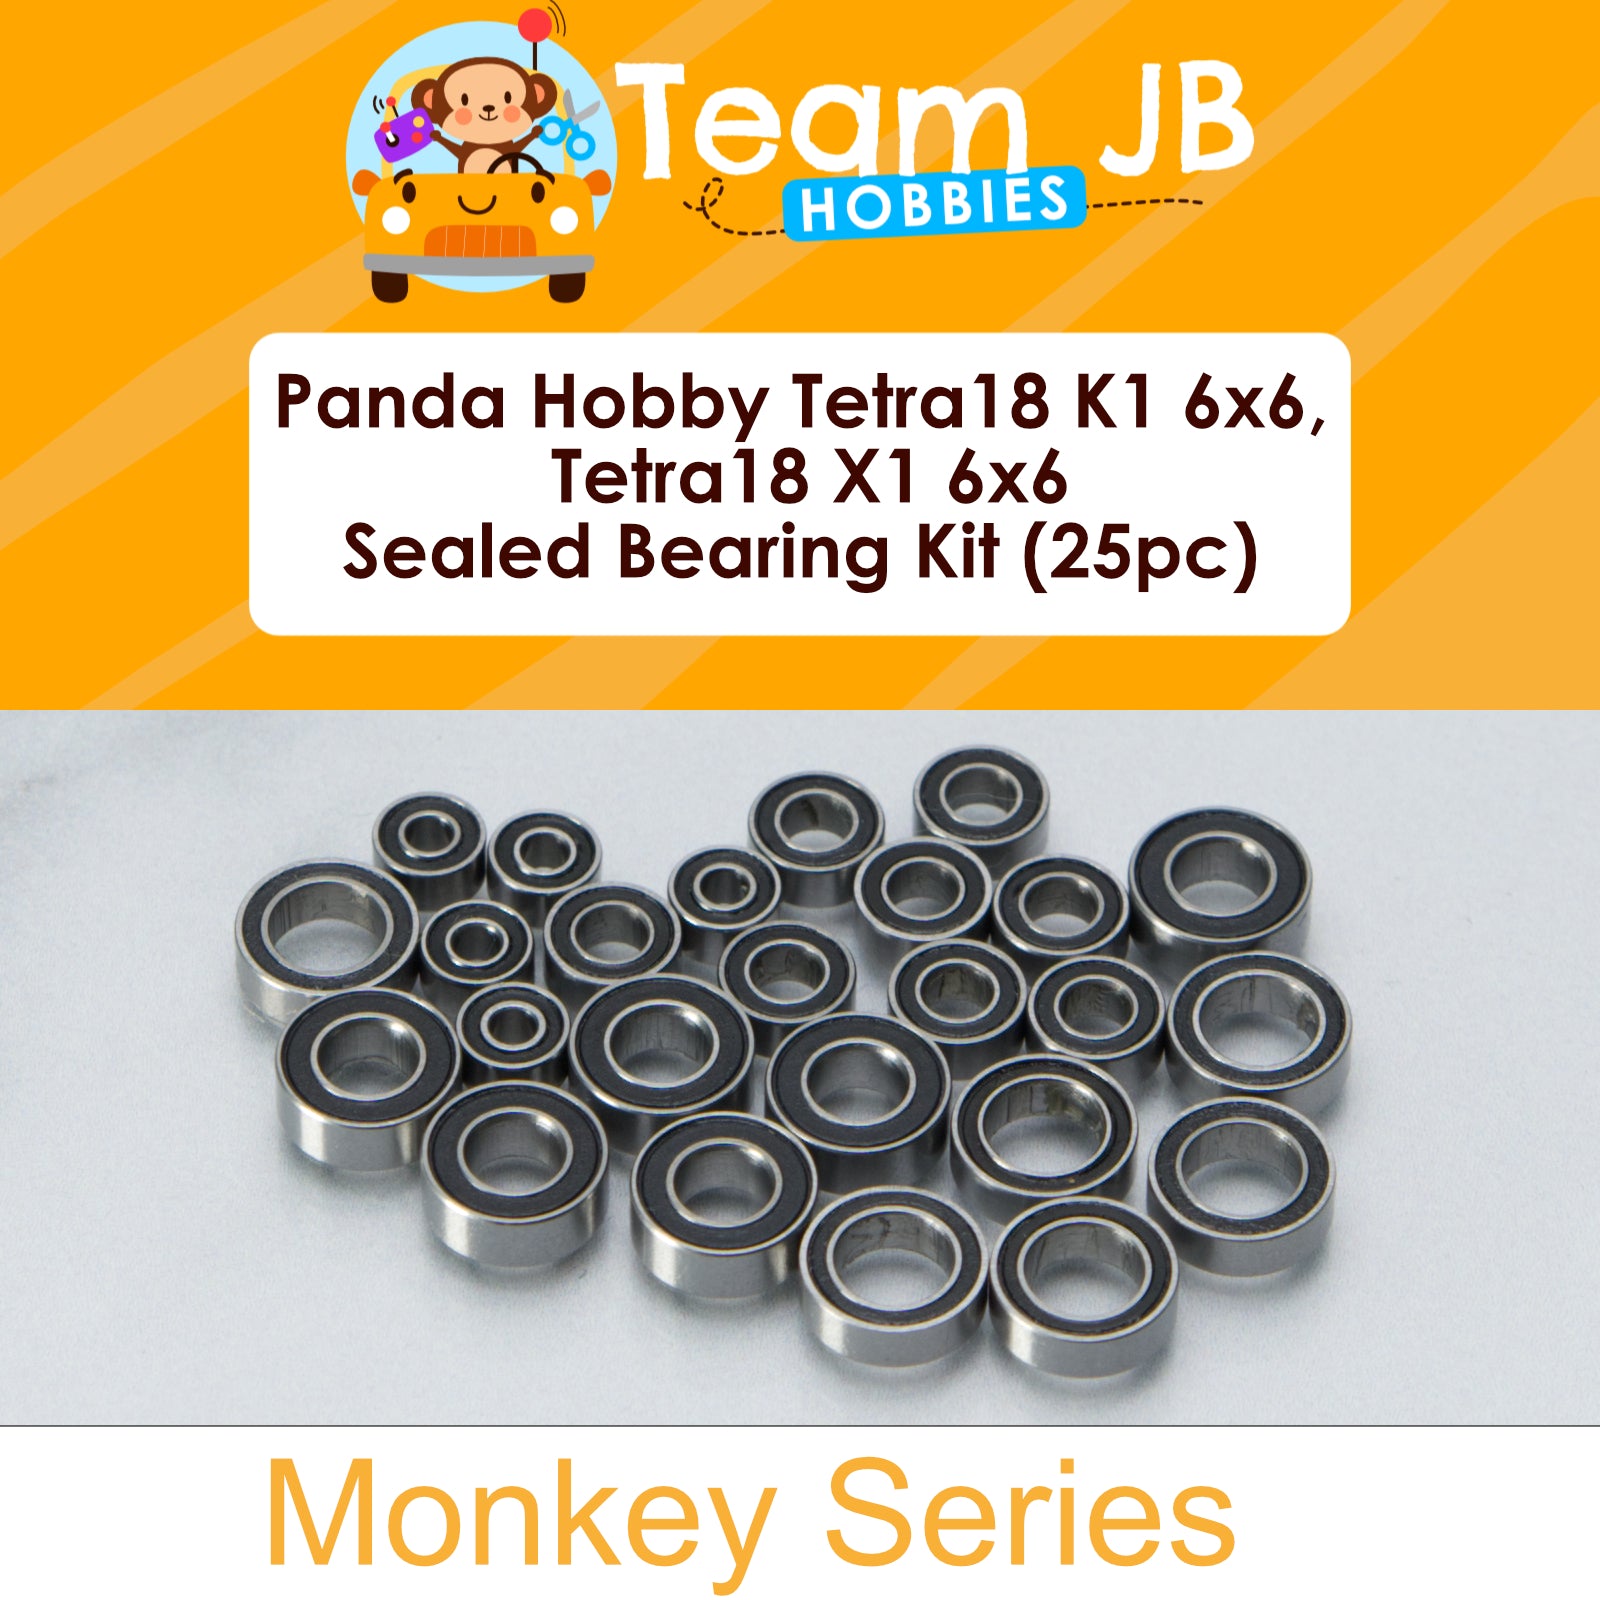 Panda Hobby Tetra18 K1 6x6, Tetra18 X1 6x6 - Sealed Bearing Kit